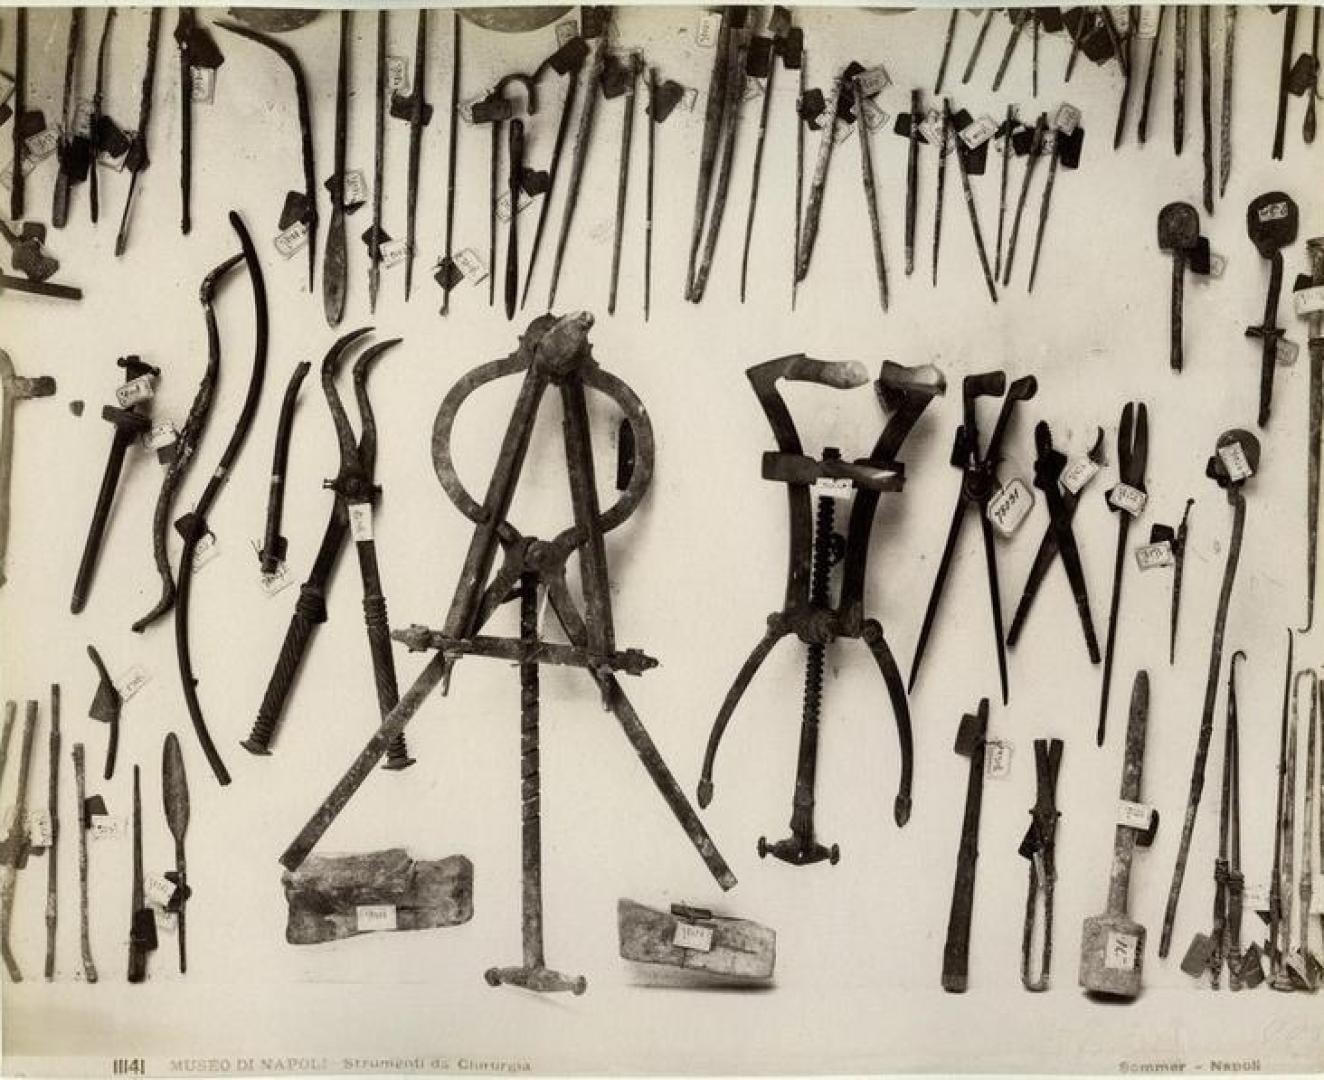 Римские хирургические инструменты